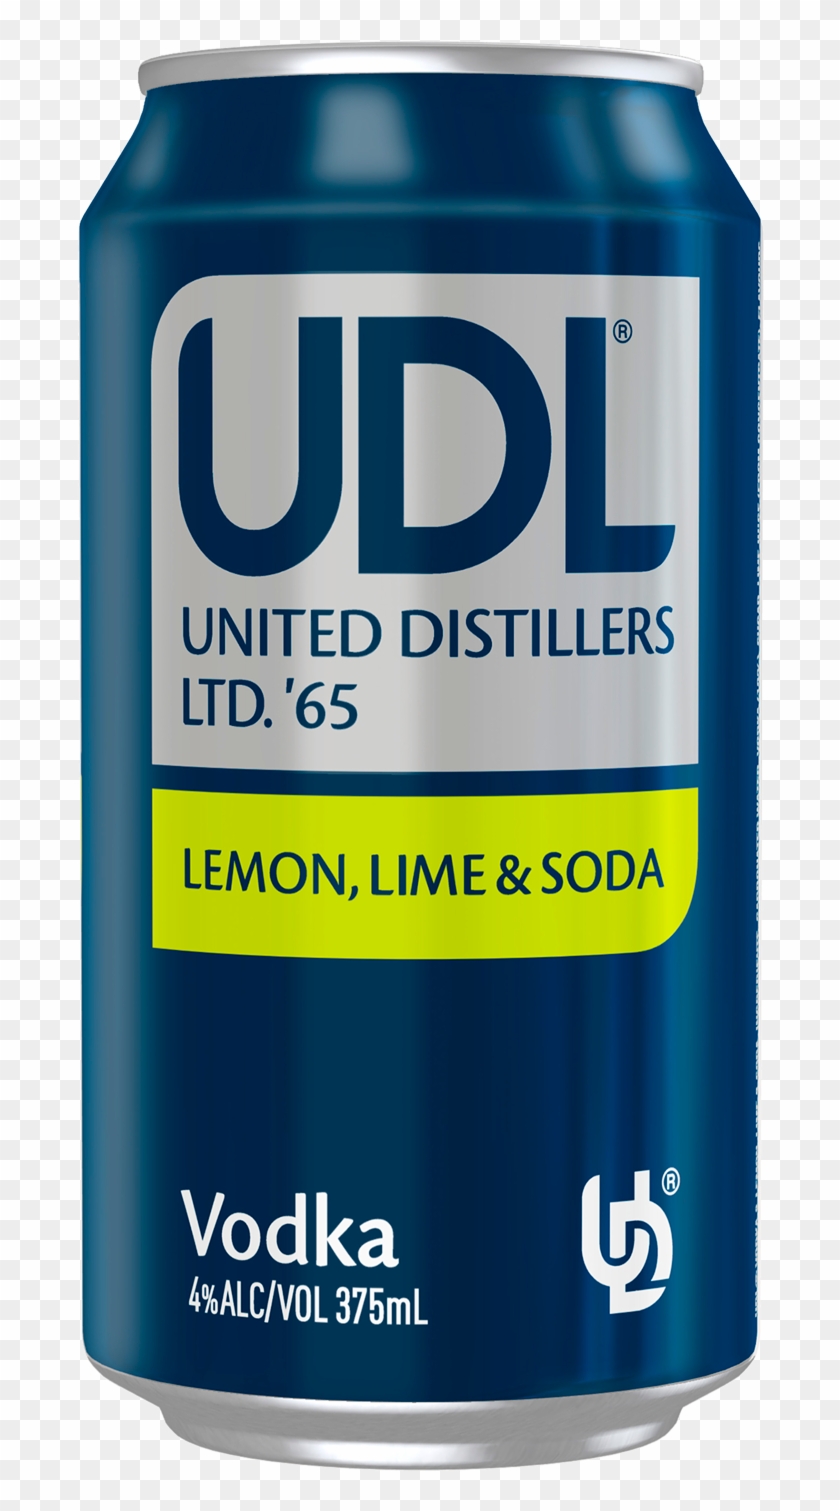 Udl Vodka Lemon Lime & Soda Cans 375ml - Graphic Design Clipart #4559242